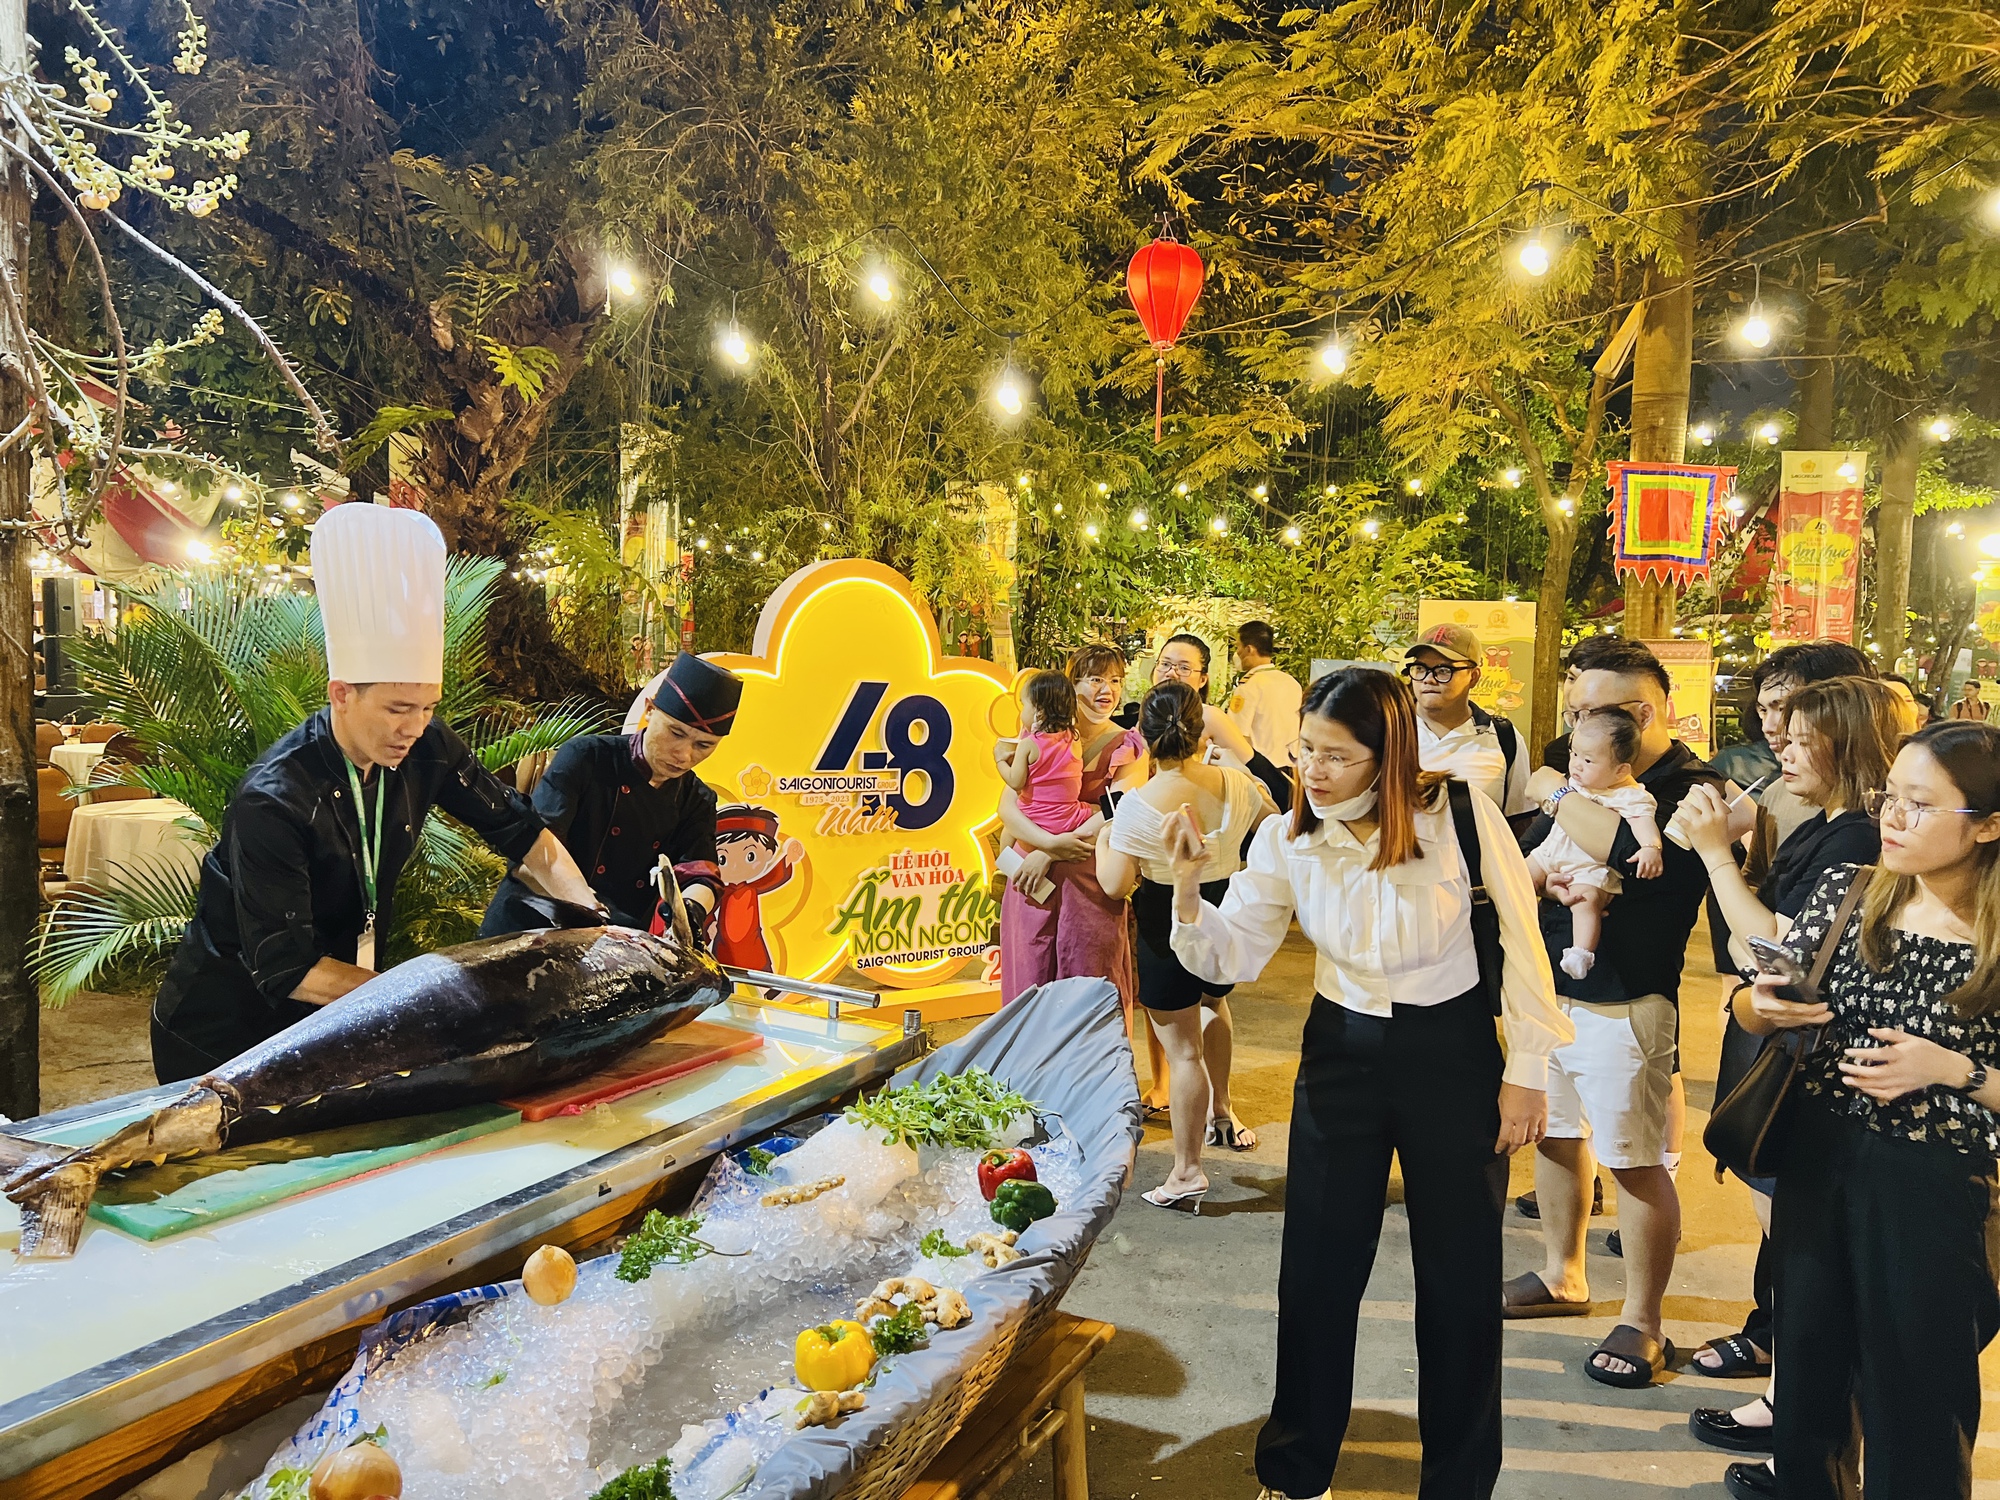 Nườm nượp khách đến Lễ hội Văn hóa Ẩm thực, thưởng thức món ngon 3 miền - Ảnh 1.